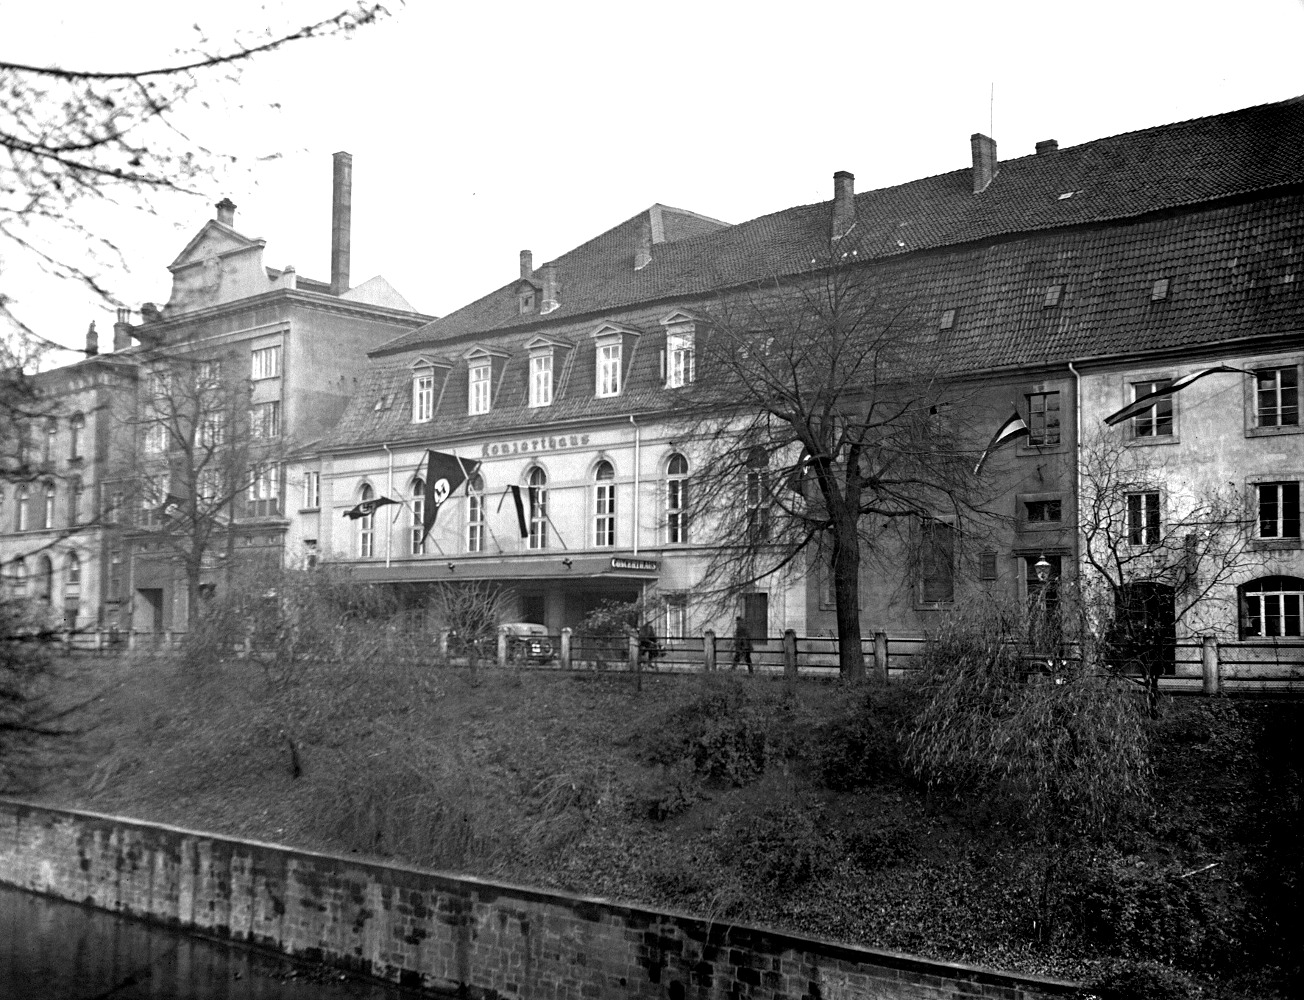 Hannover: Mit Hakenkreuzfahne - Konzerthaus am Hohen Ufer in der ehemaligen Reithalle, rechts anschließend der Neue Marstall, undatiert. Bildarchiv Historisches Museum Hannover